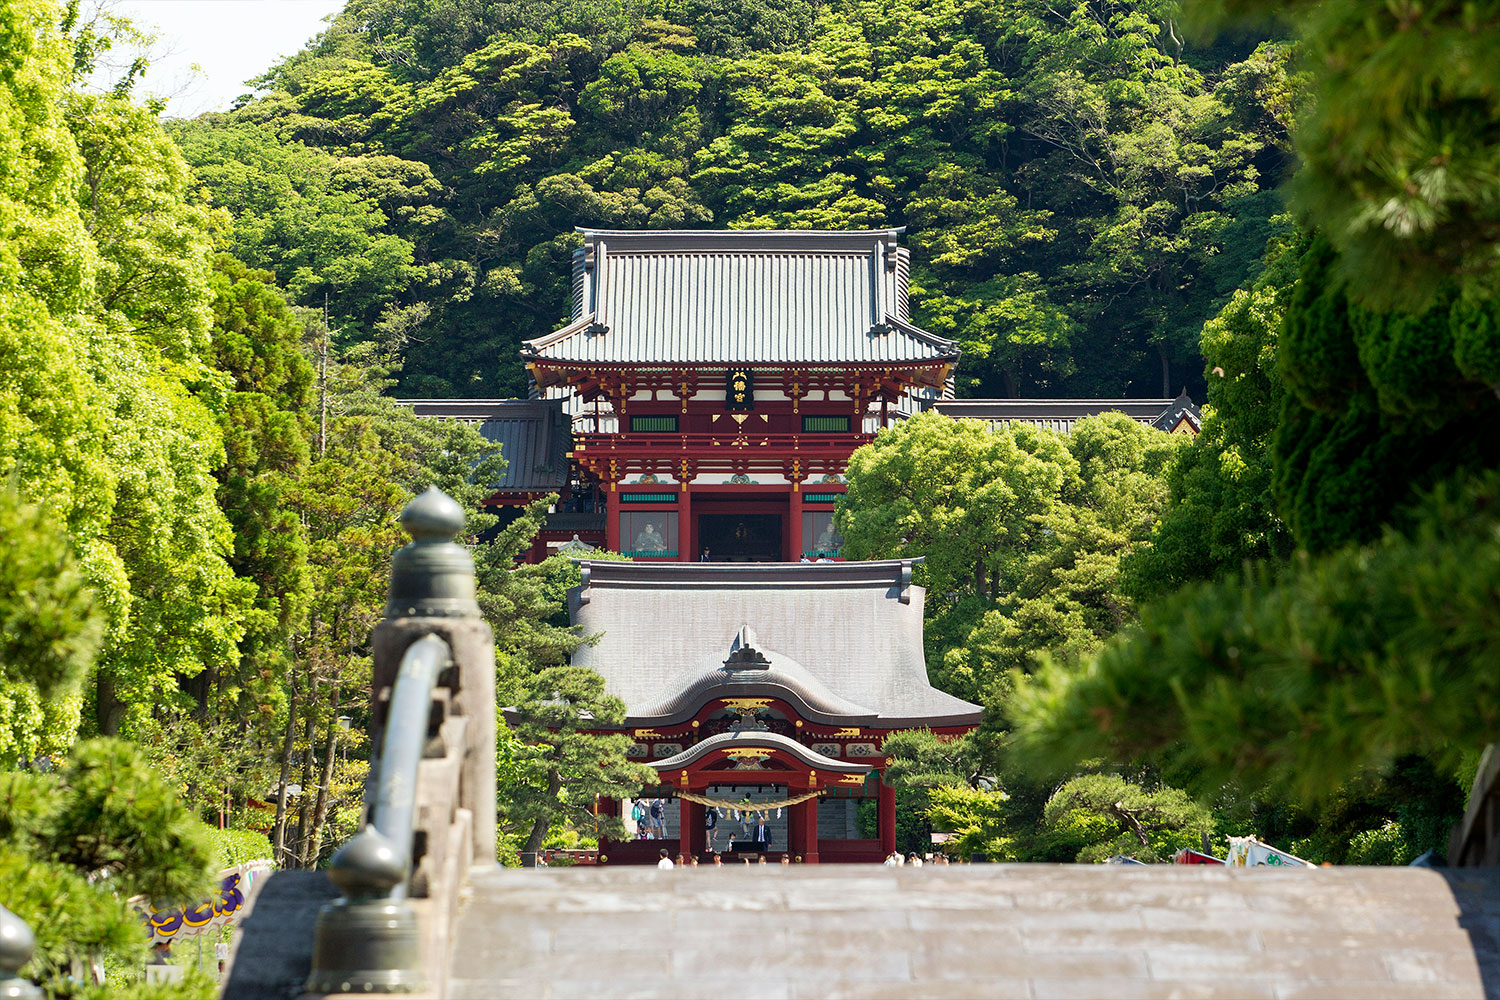 和婚が人気の鎌倉で和風の引出物や結婚のご贈答に鎌倉彫をオススメしております